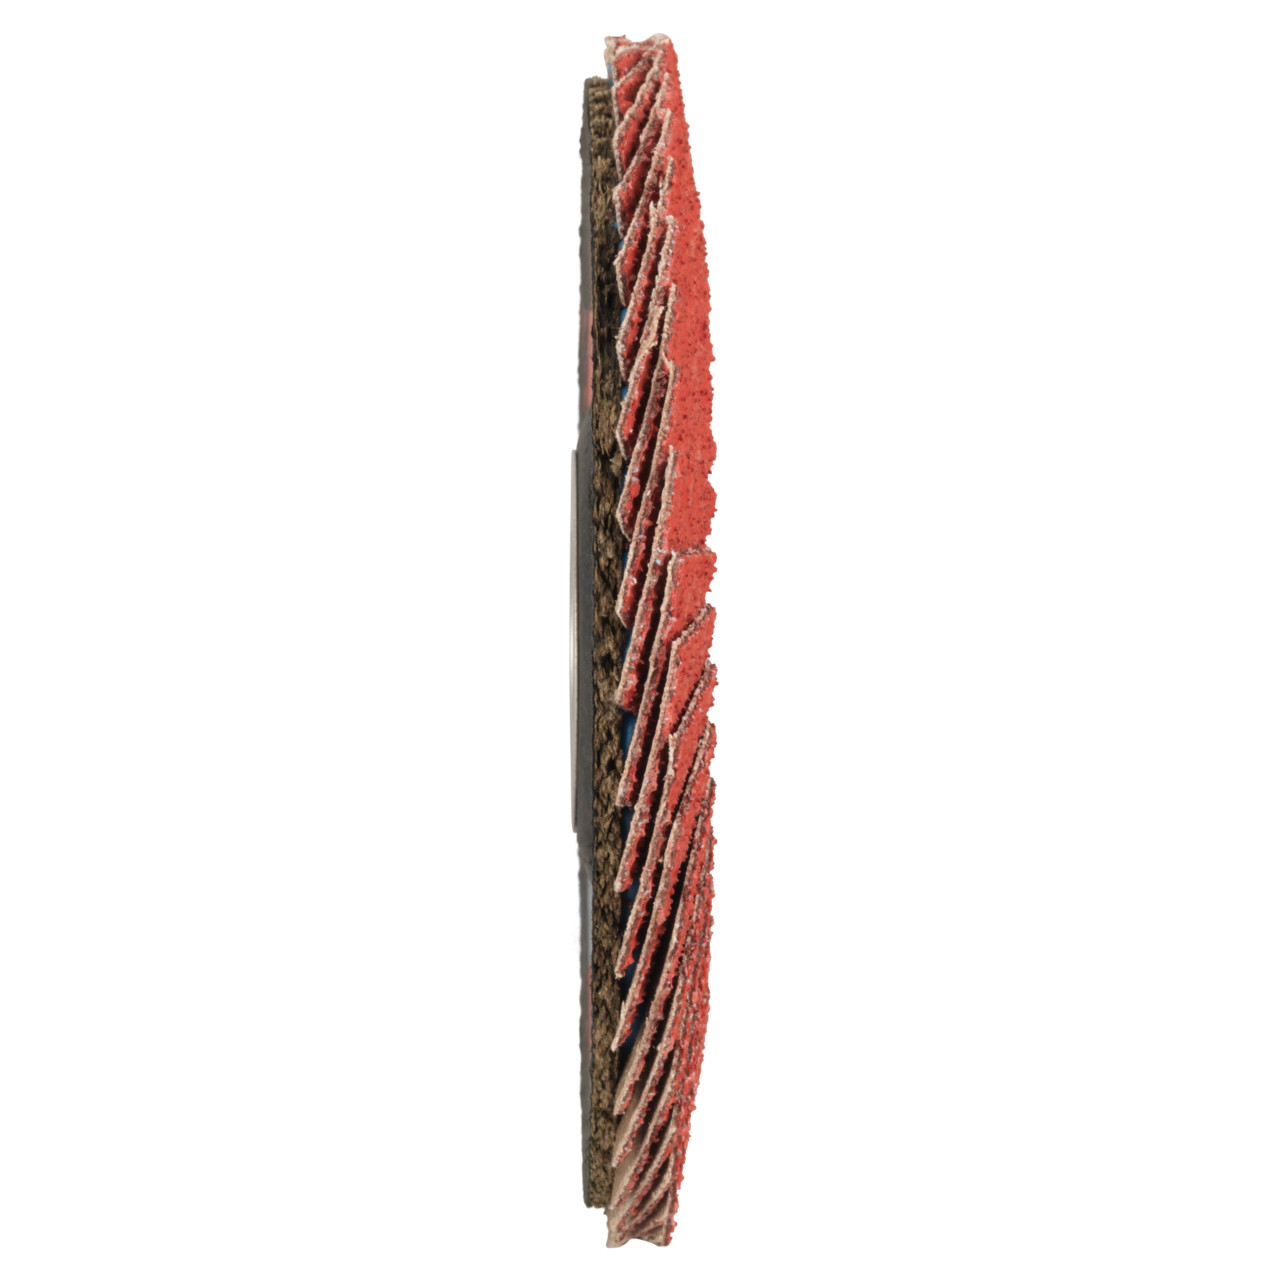 Tyrolit Rondelle éventail DxH 178x22,23 CERAMIC pour acier inoxydable, P40, forme : 28A - modèle droit (modèle à corps en fibre de verre), art. 34166859